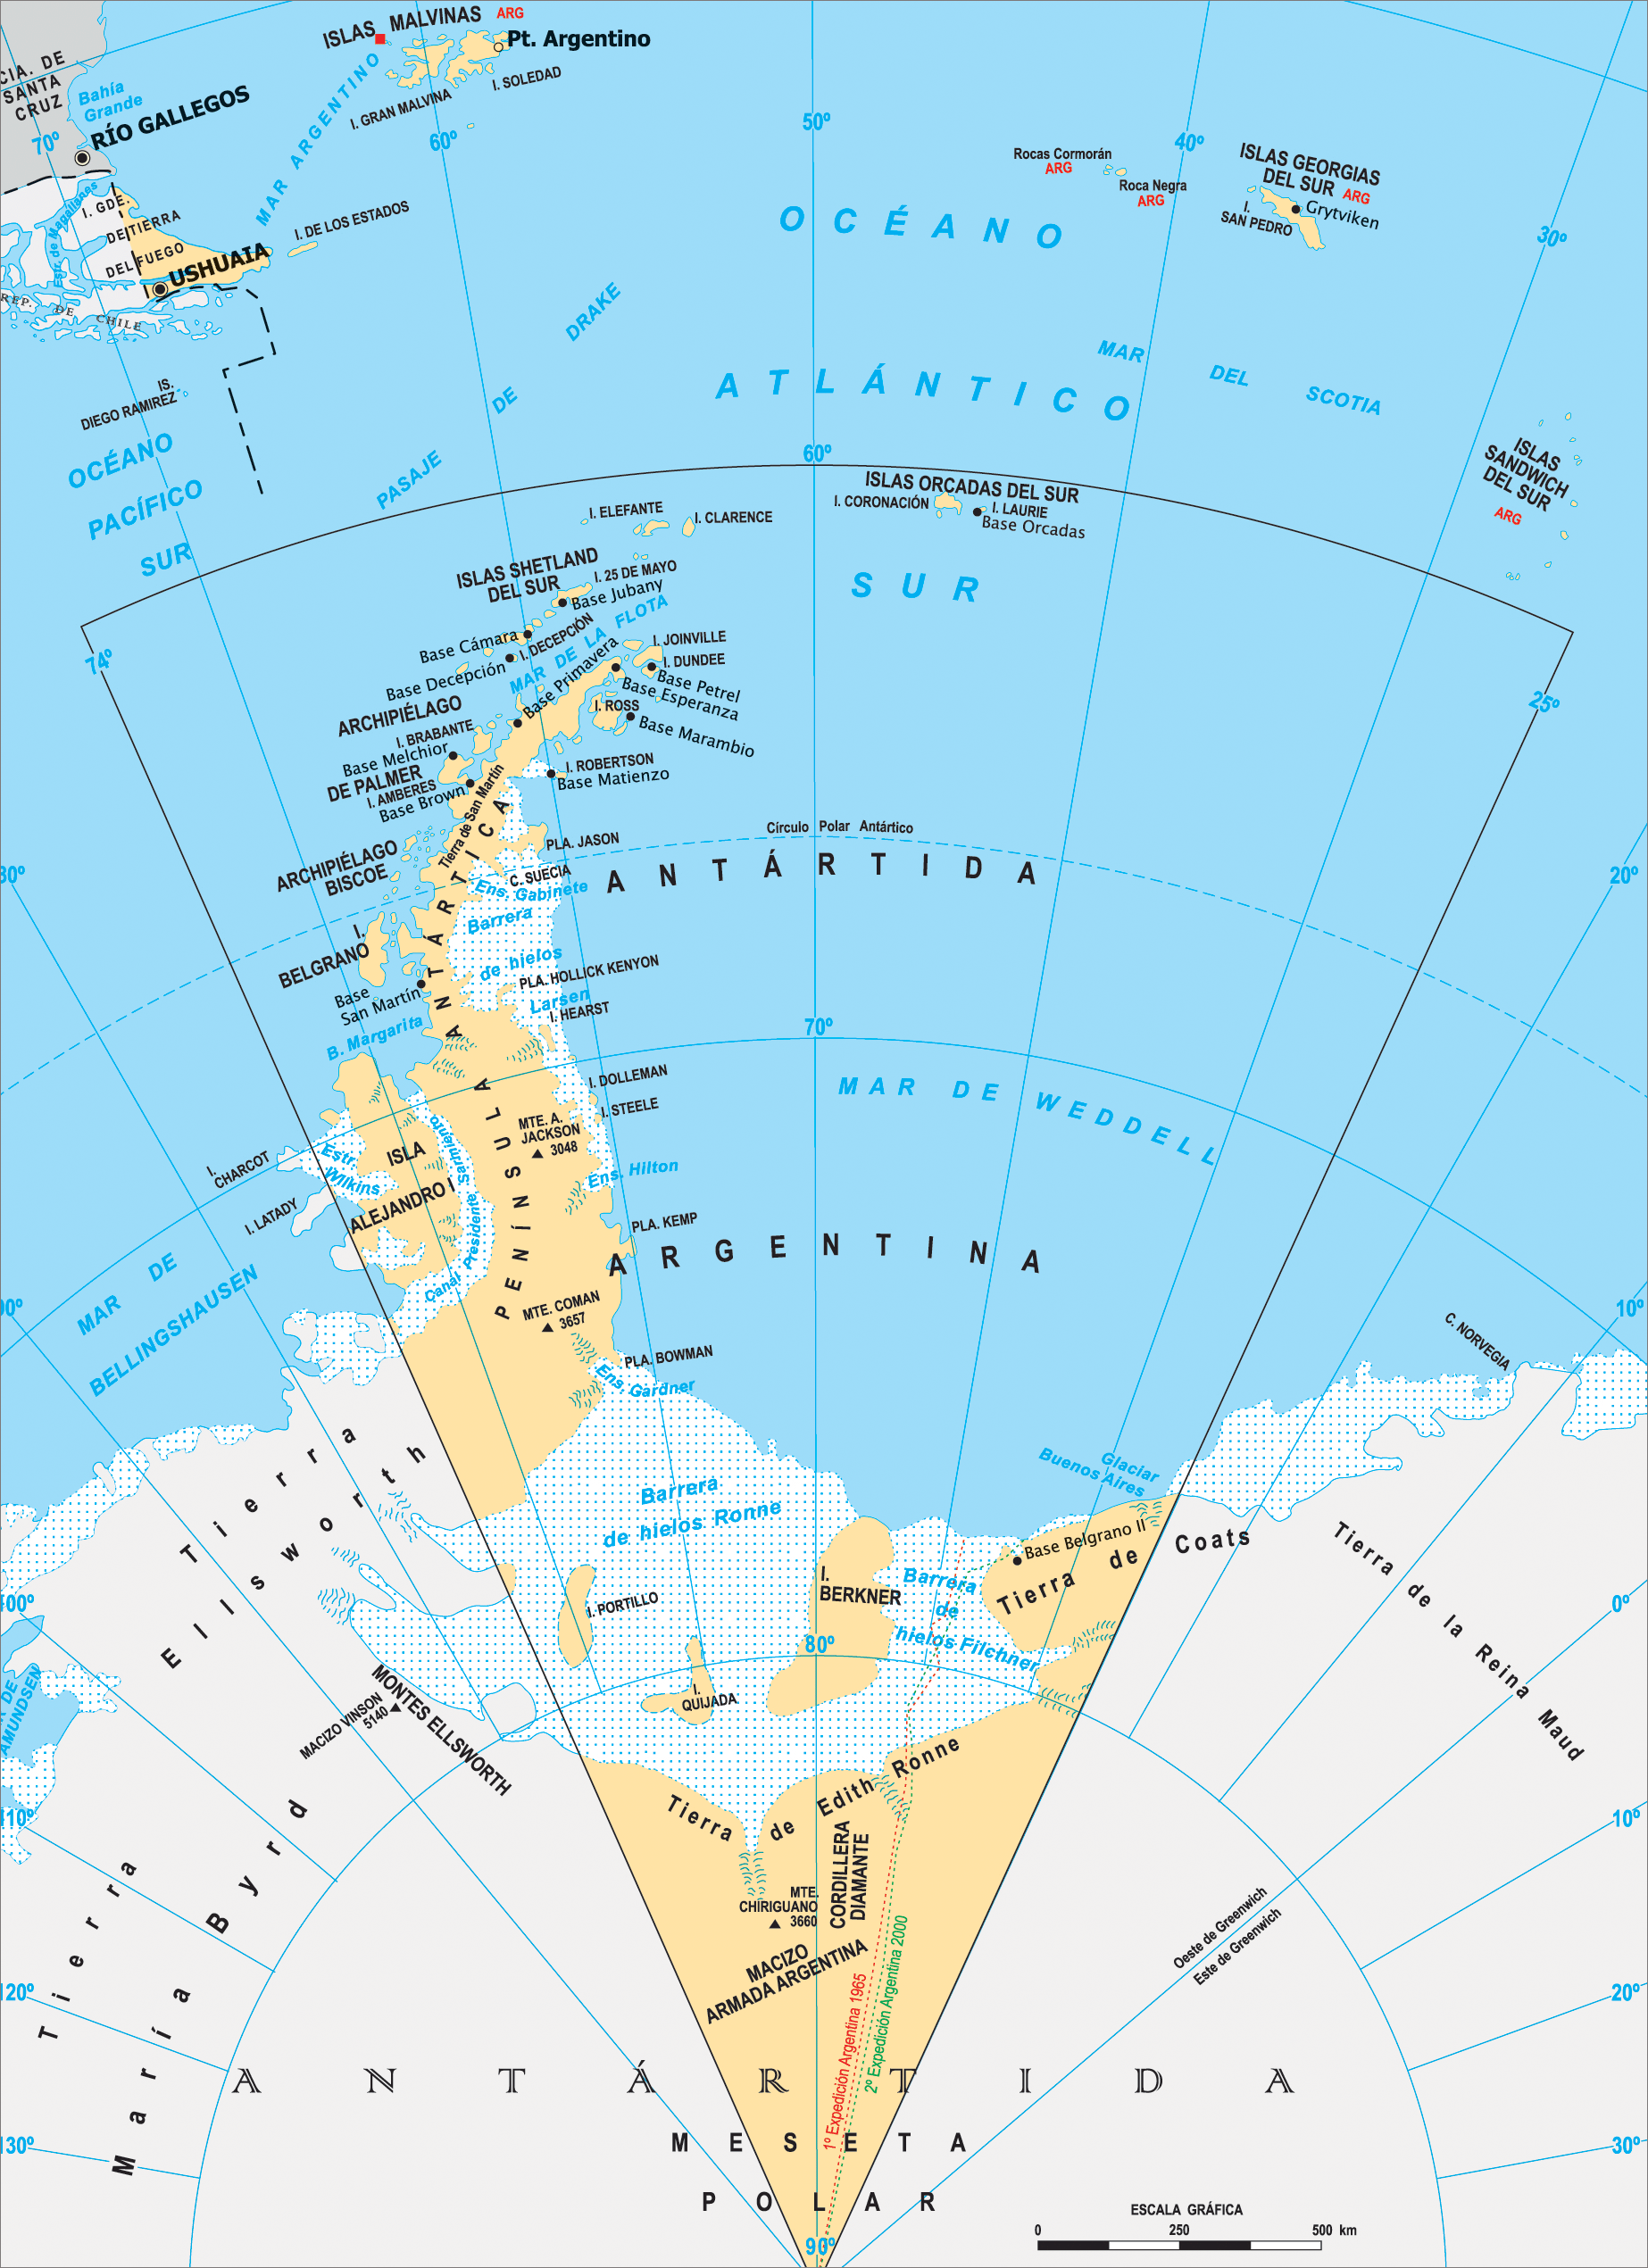 下面是2014年最新的火地岛和南大西洋,所处国家:阿根廷.图片